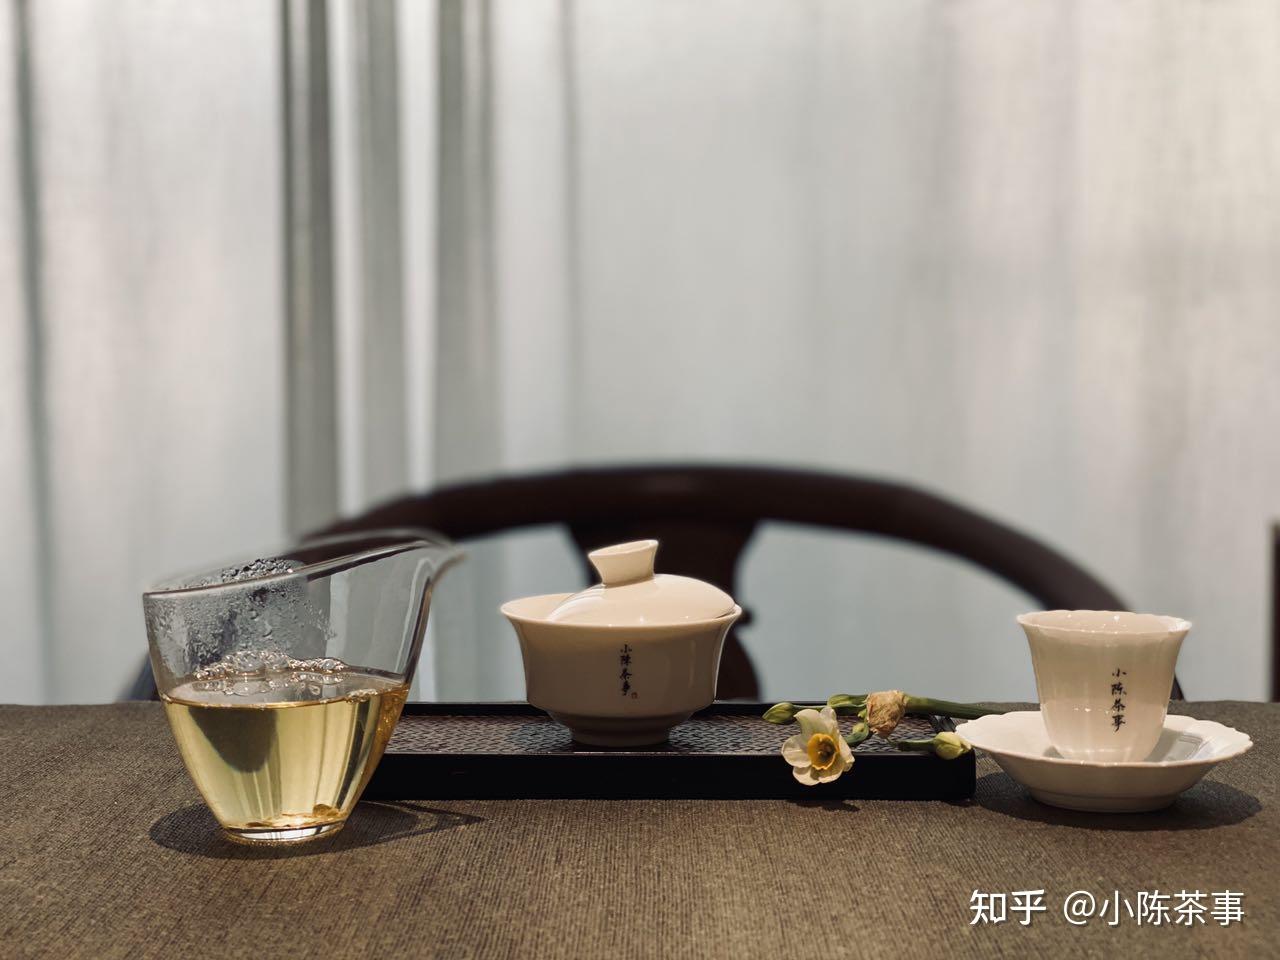 【魅力社团】茶韵飘香——丽泽中学茶艺社团